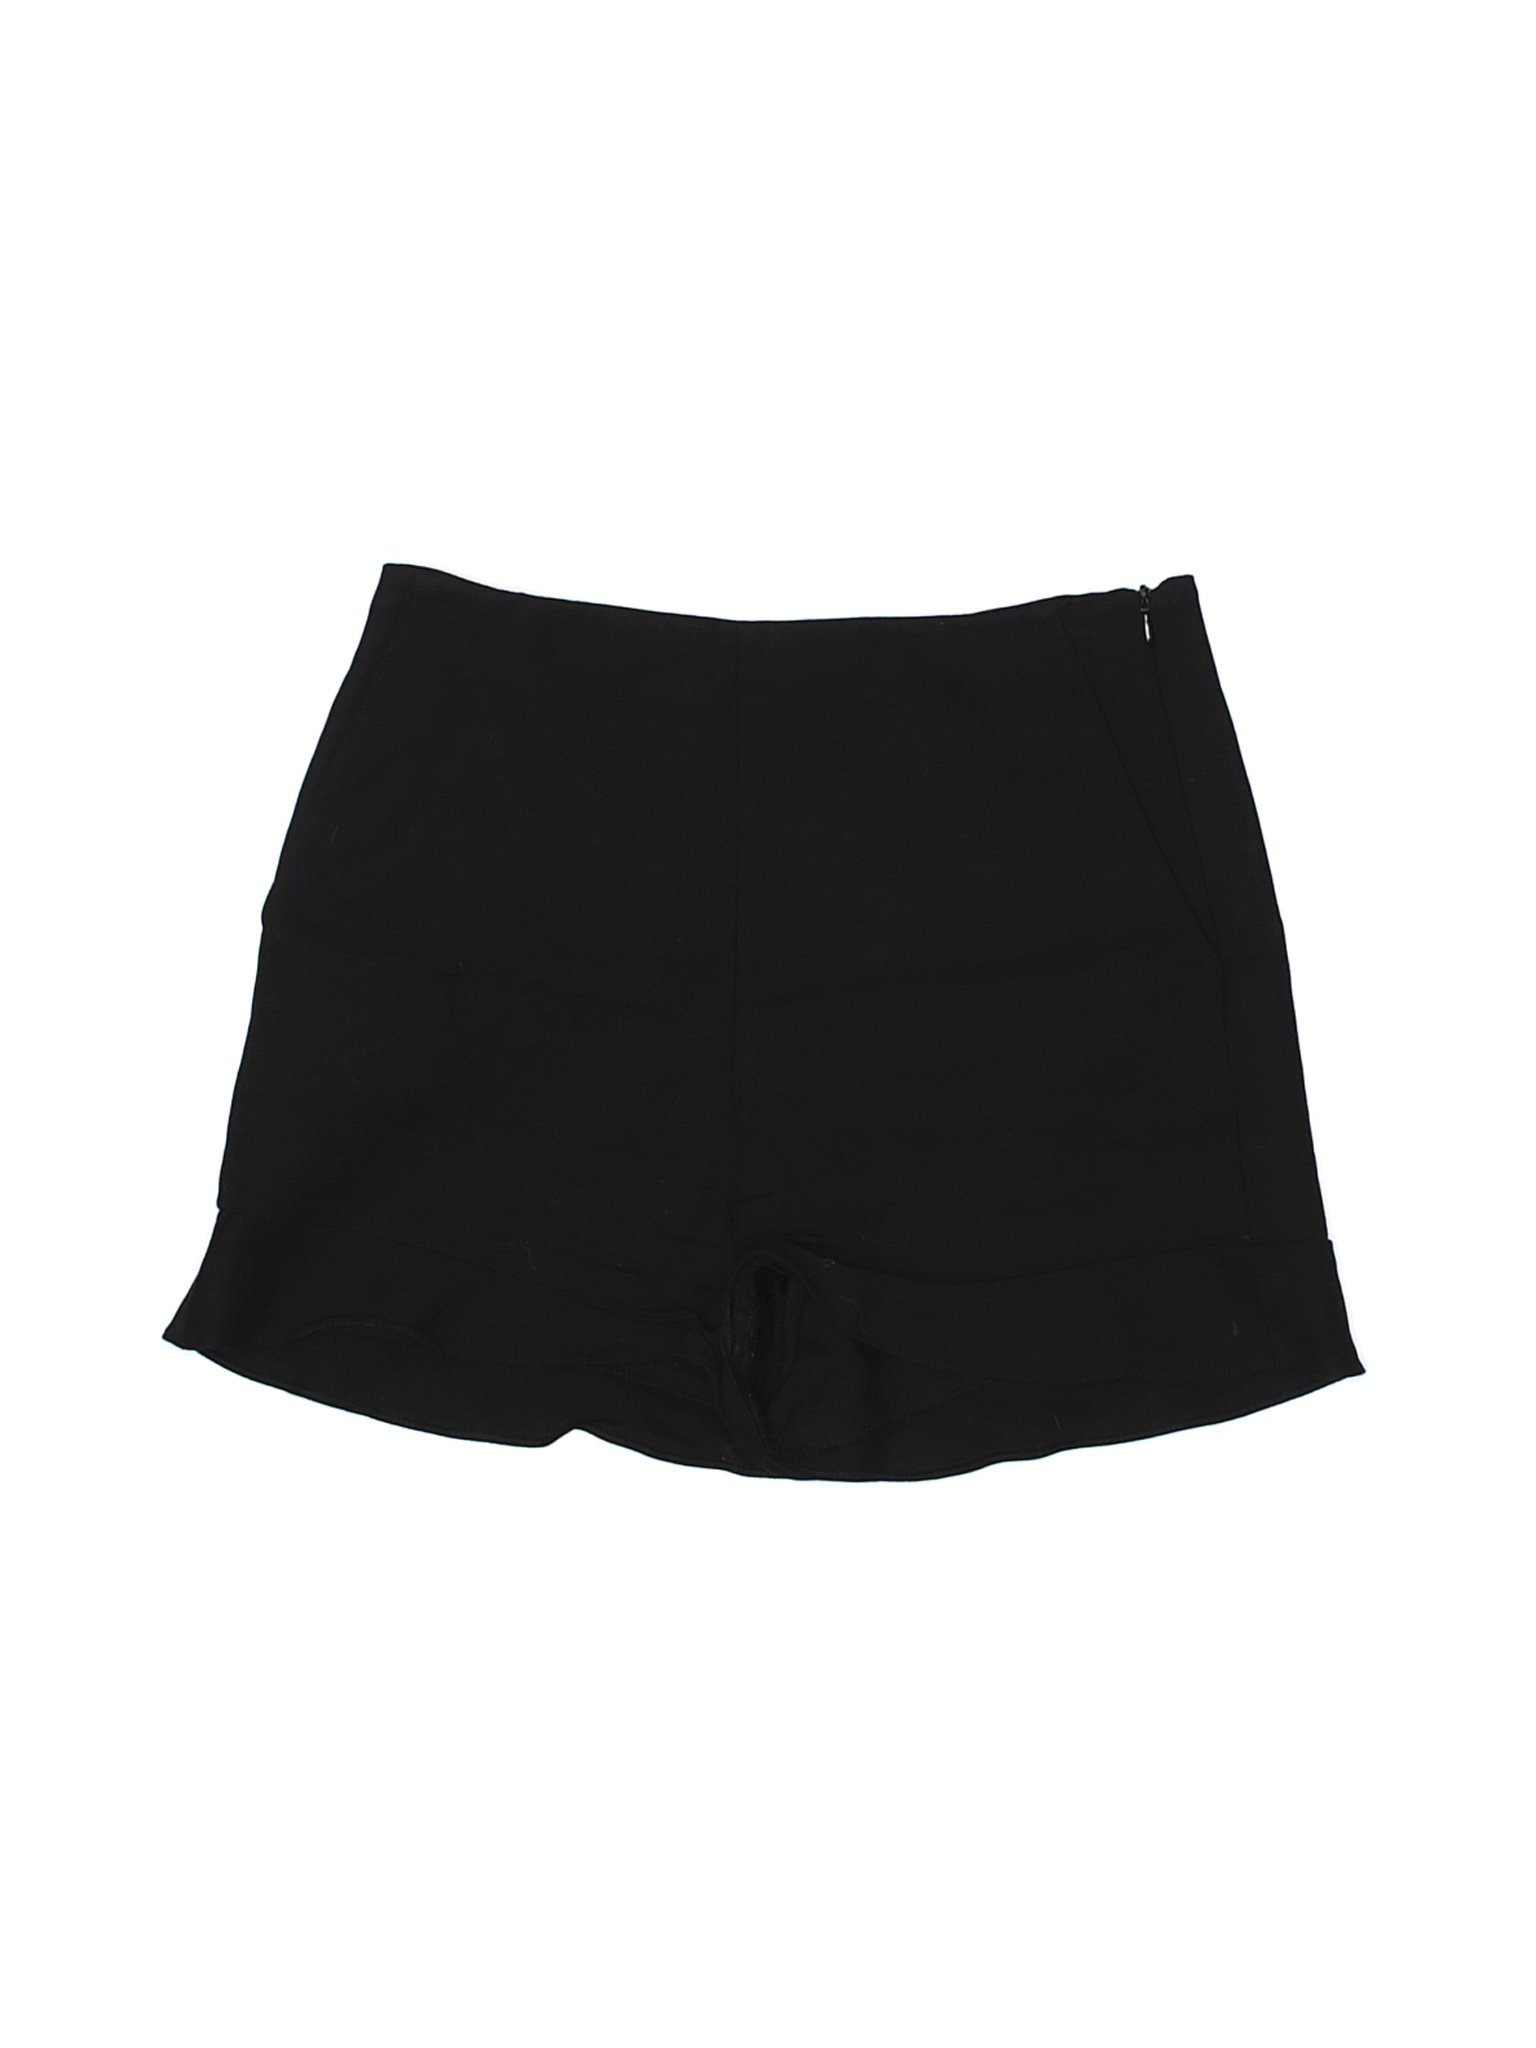 Zara Women Black Shorts M | eBay